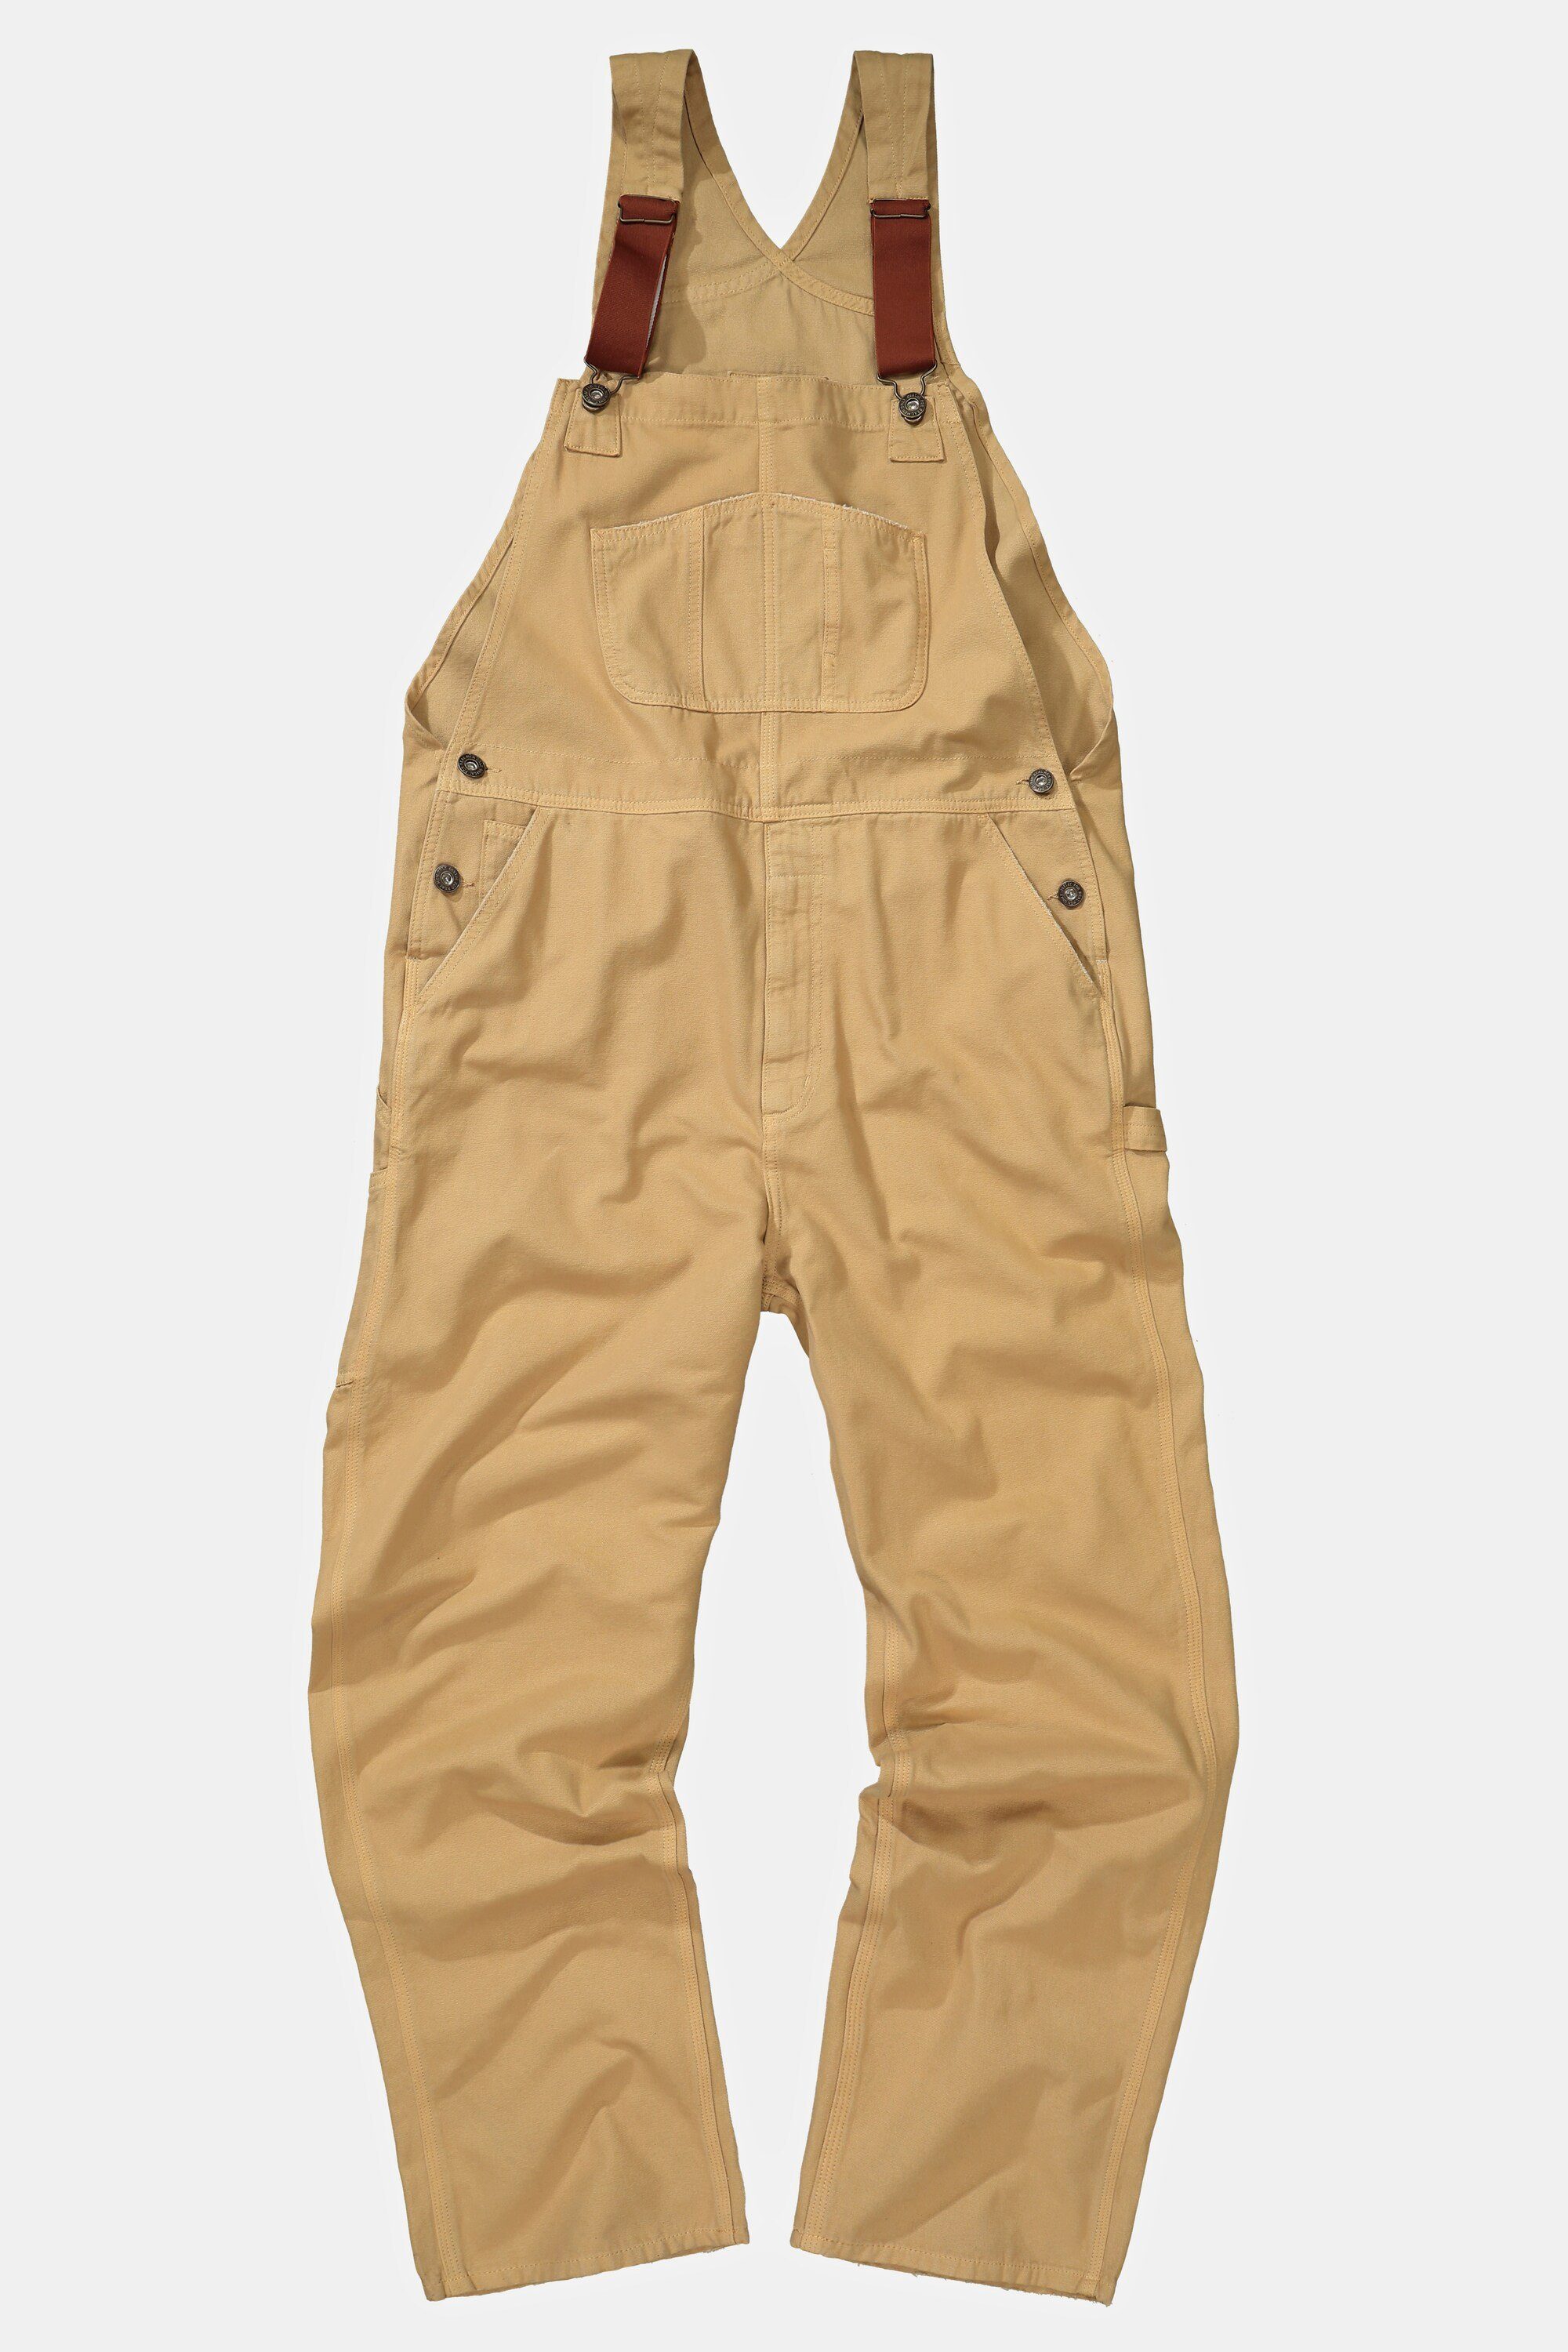 Taschen viele braun JP1880 5-Pocket-Jeans Latzhose Workwear elastische Träger